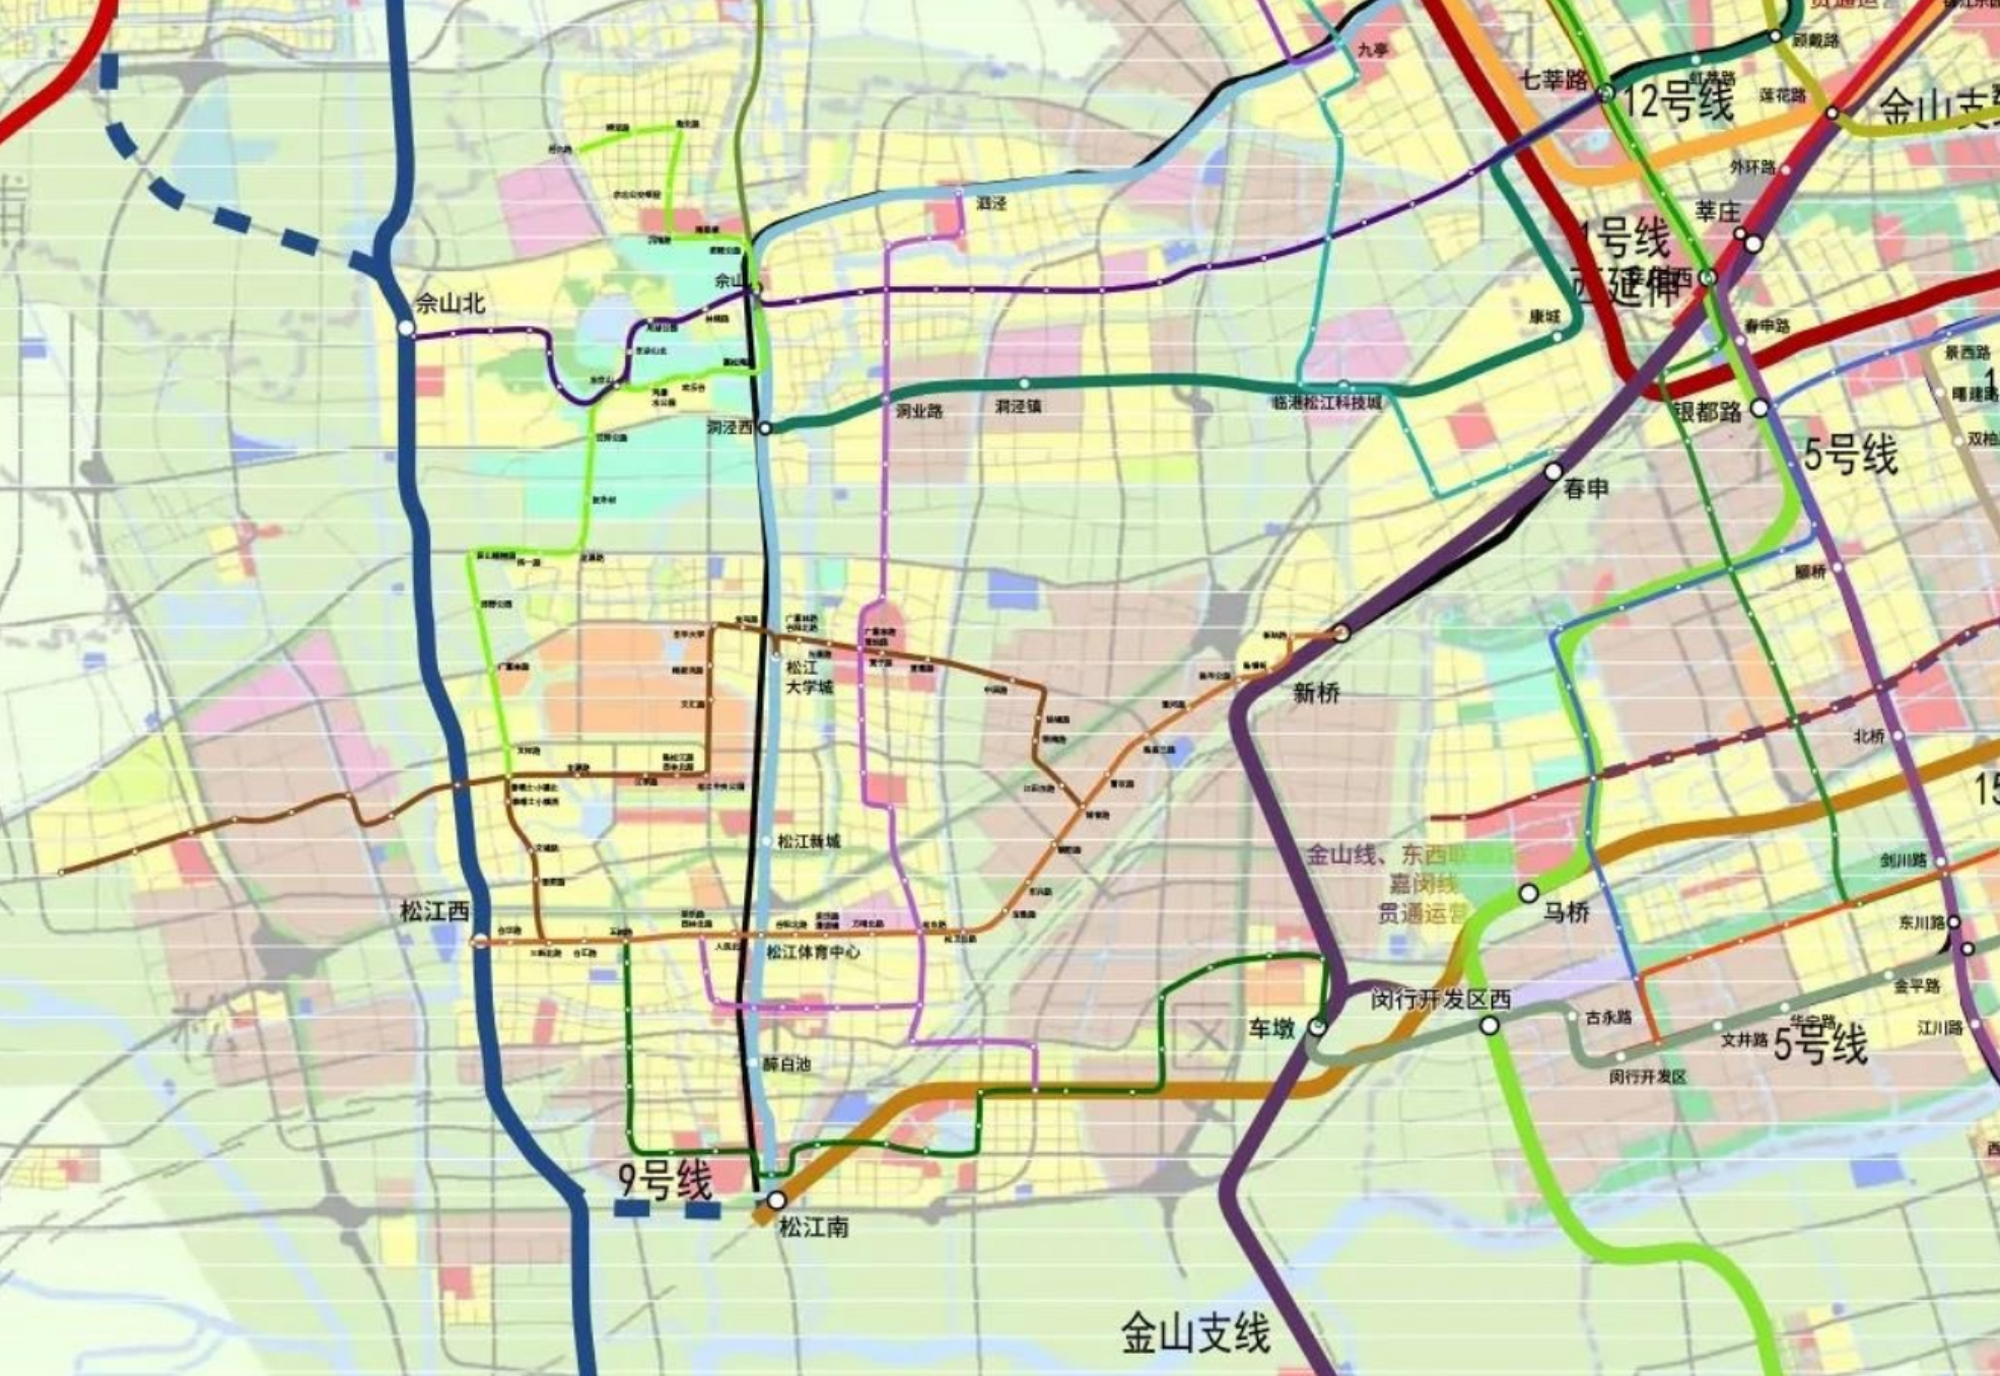 上海地铁12号线西延伸仍在未有定论,民间的方案却已经五花八门